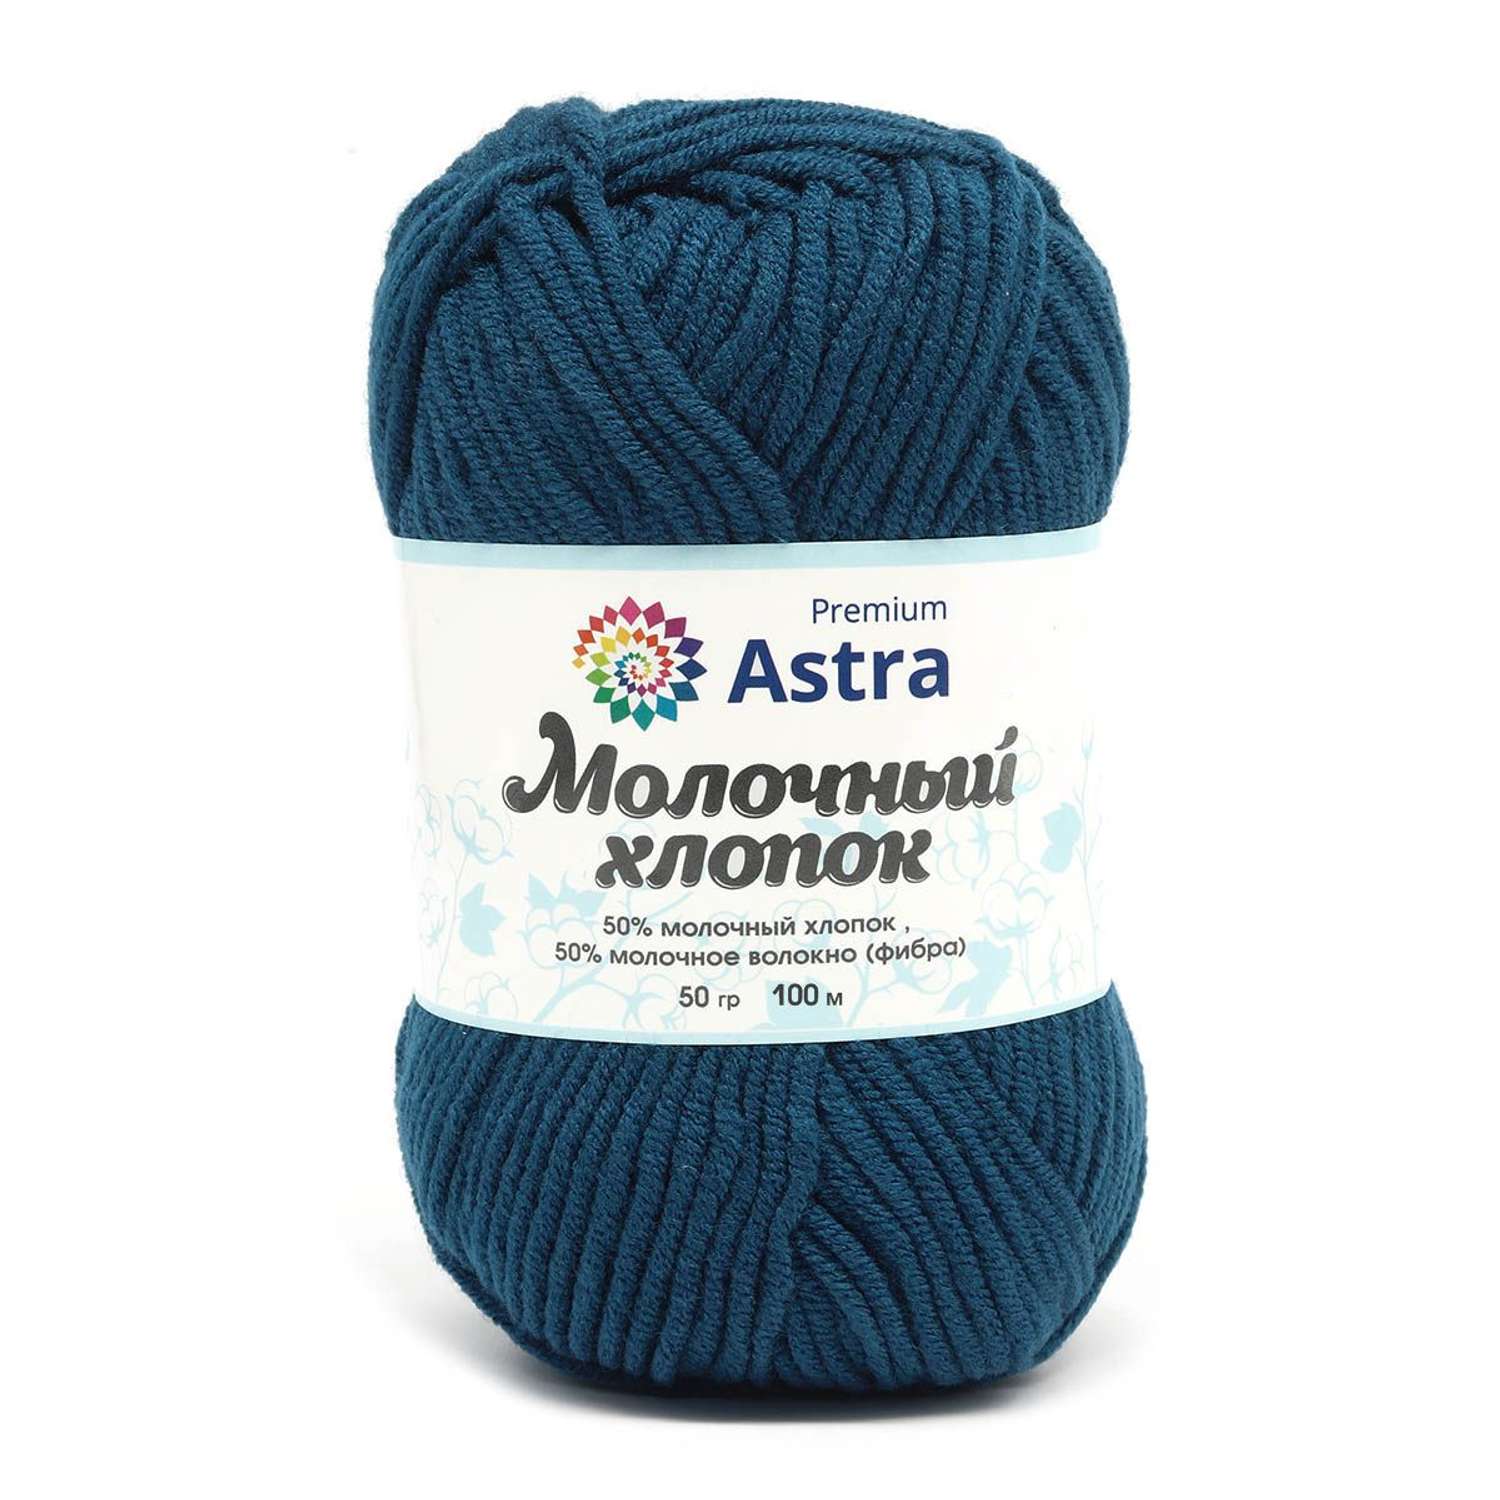 Пряжа для вязания Astra Premium milk cotton хлопок акрил 50 гр 100 м 60 синий джинсовый 3 мотка - фото 11